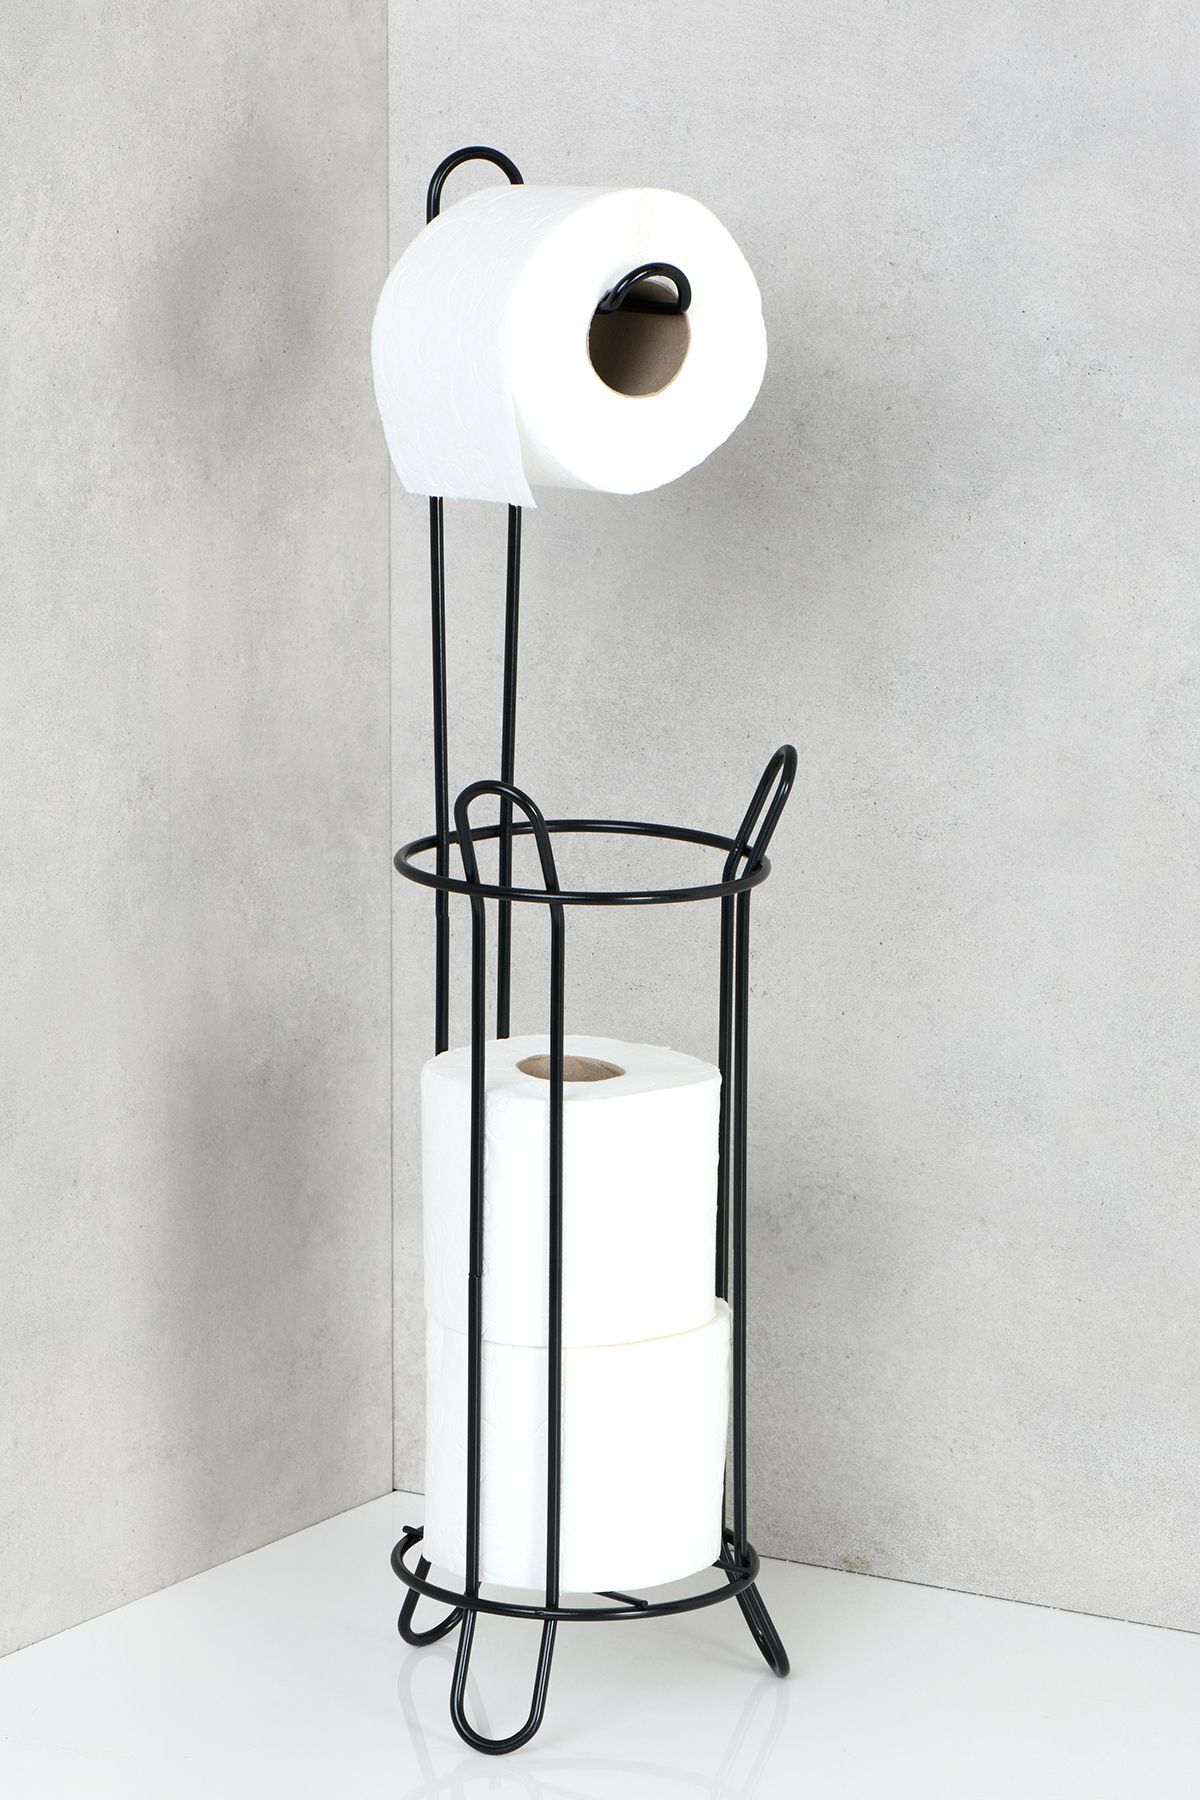 Hagen Yedekli Tuvalet Kağıtlık Ayaklı WClik